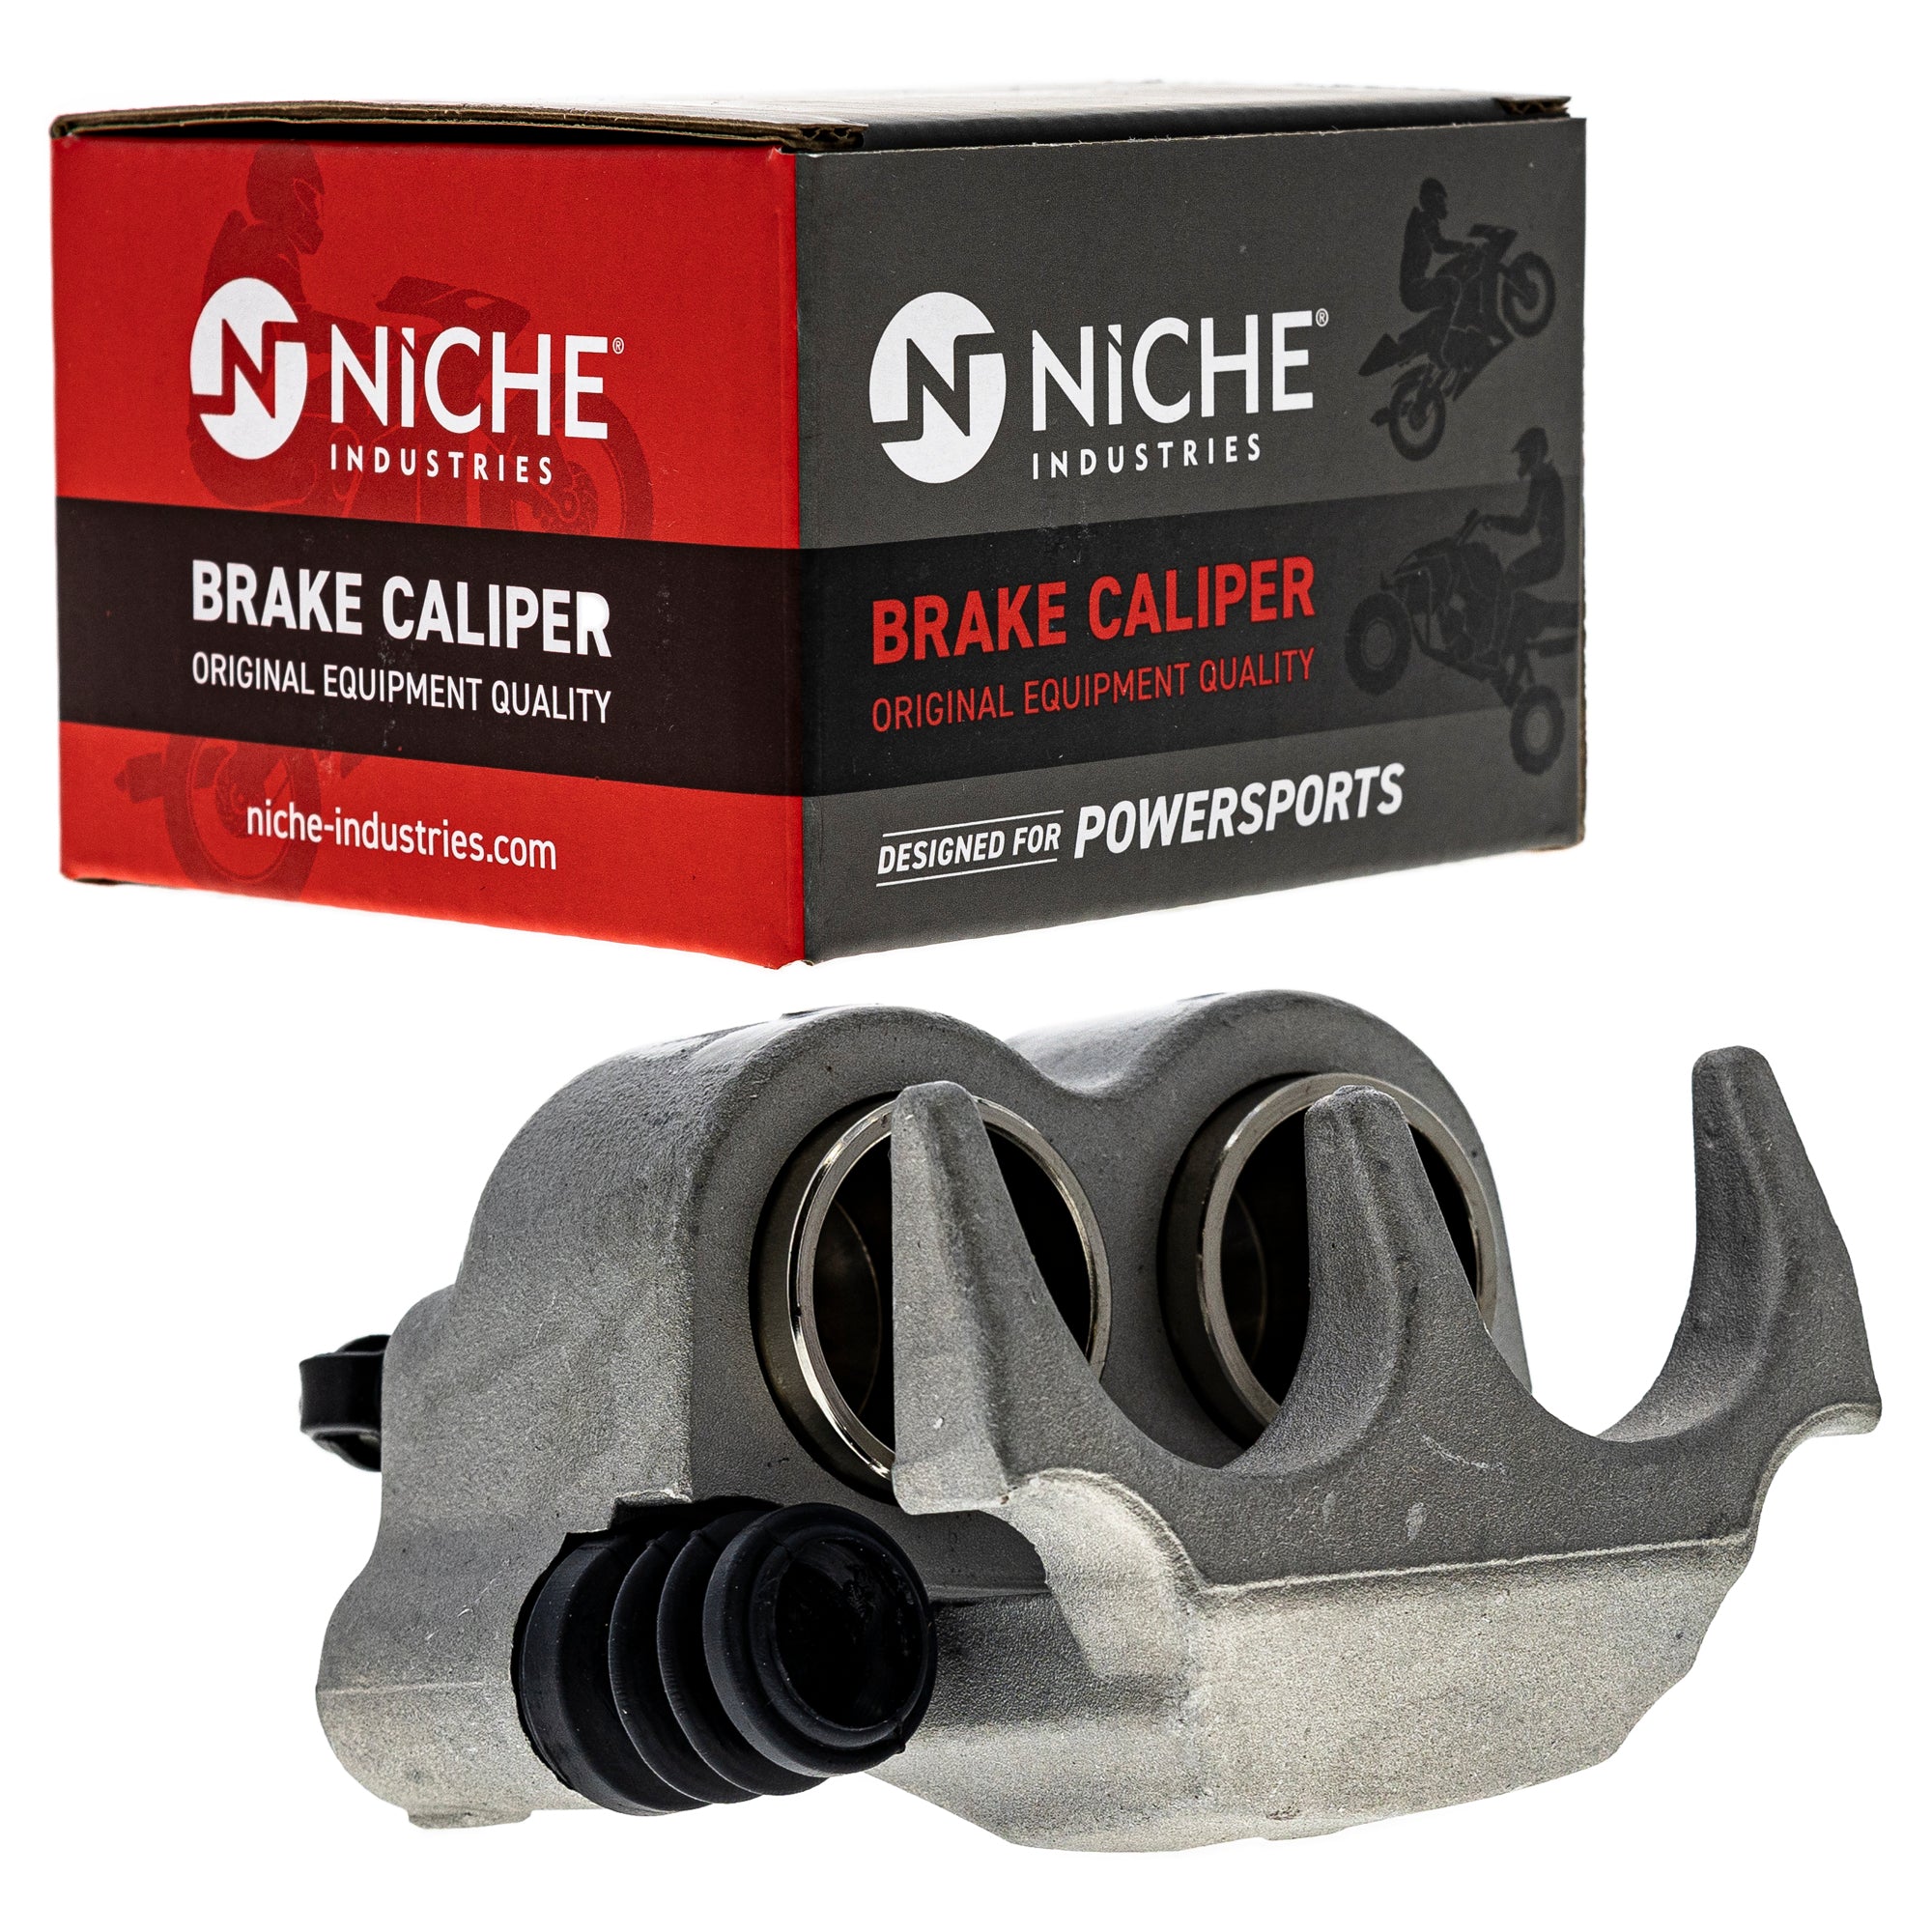 NICHE MK1001070 Brake Caliper Kit